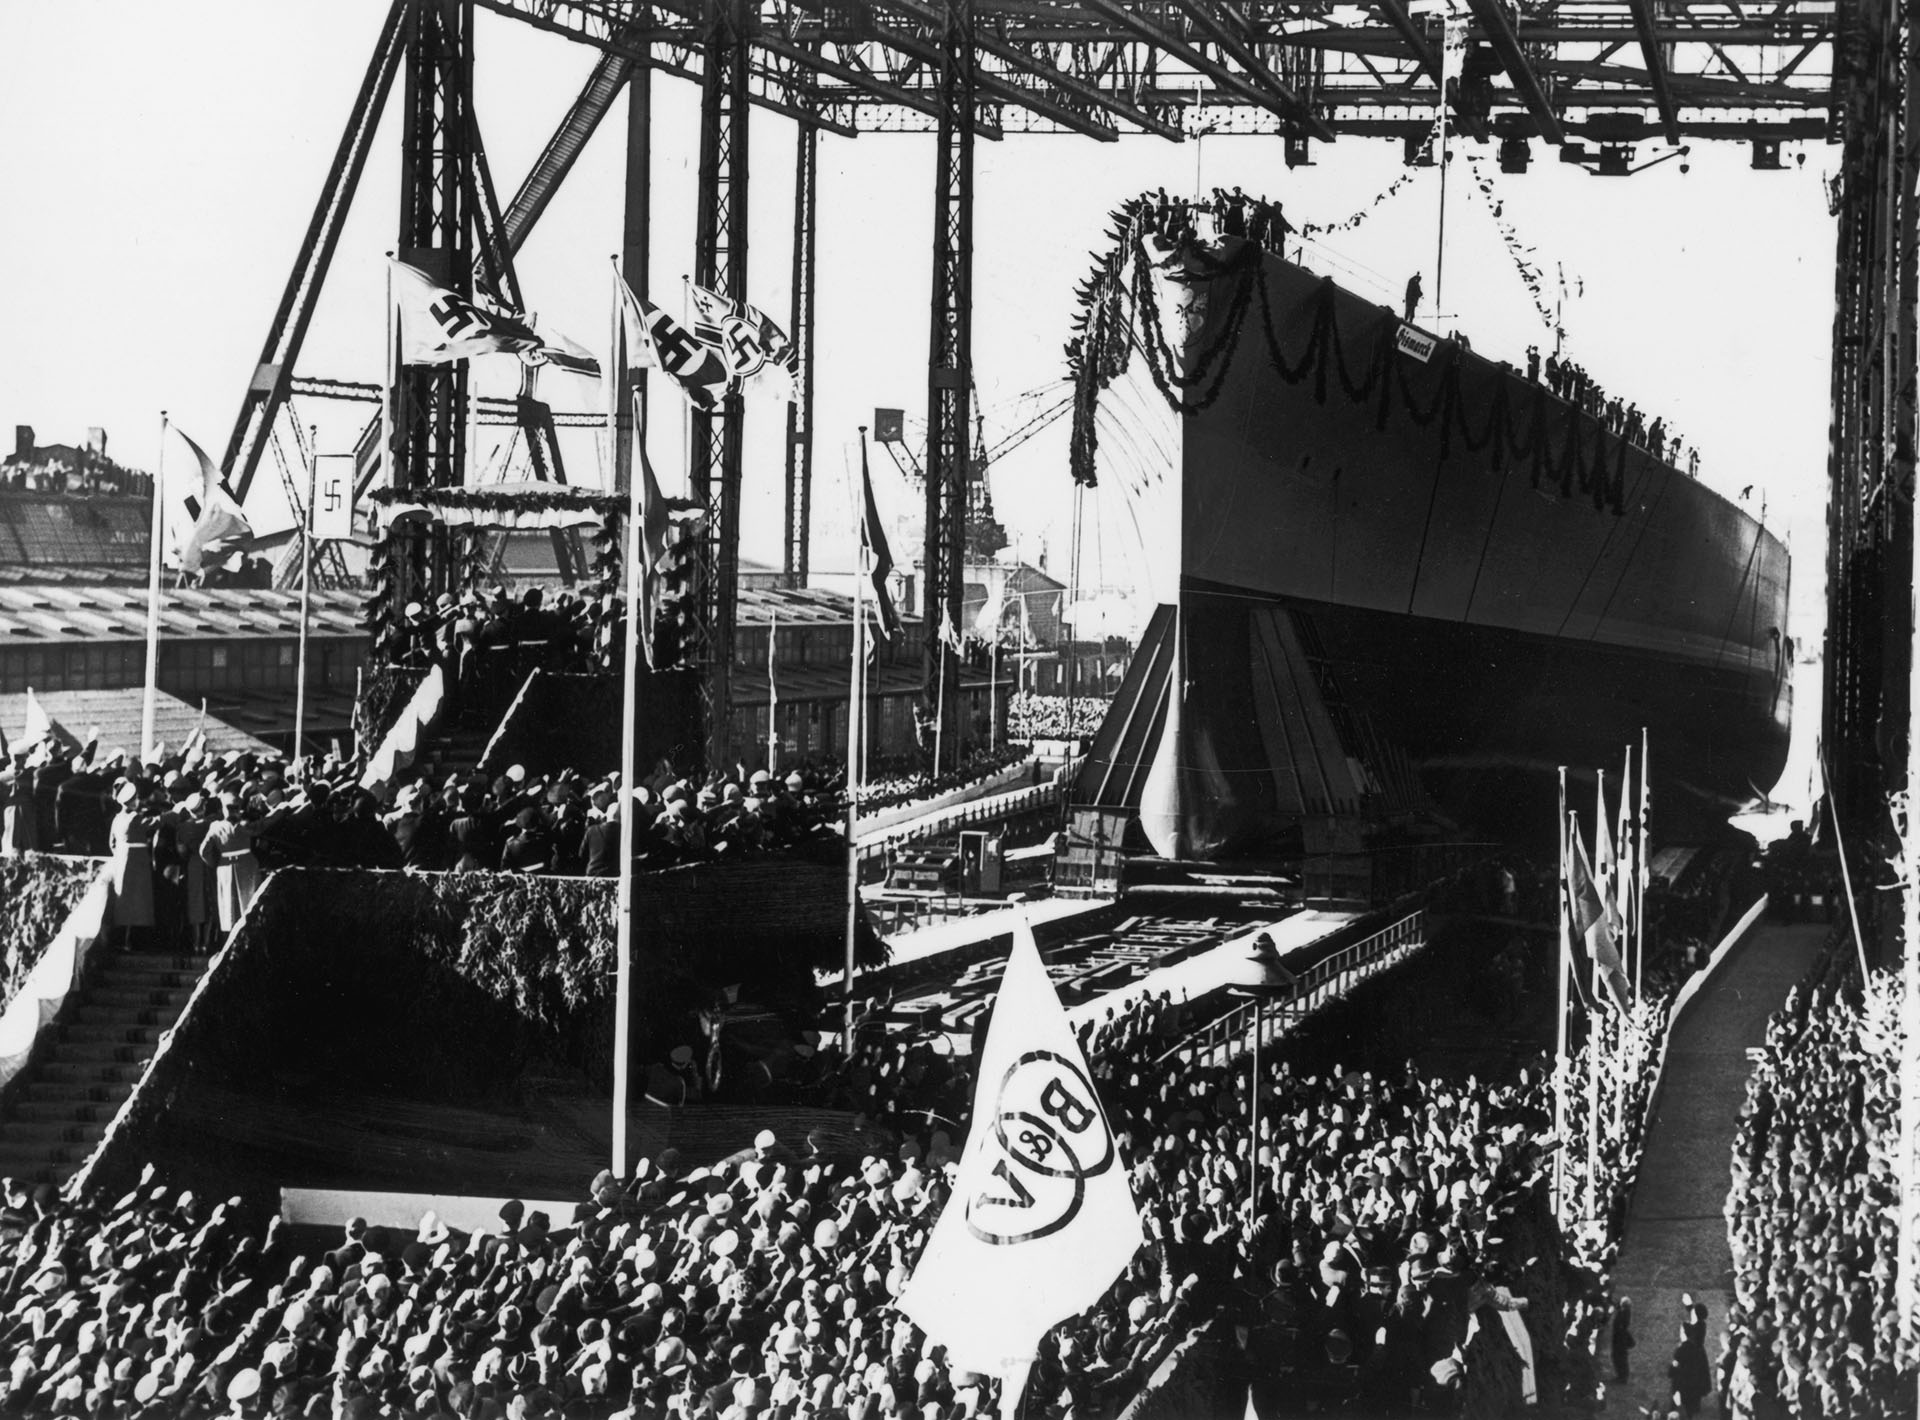 14 de febrero de 1939: Adolf Hitler asiste a la botadura del Bismarck, el primer acorazado alemán de posguerra de 35.000 toneladas, en el astillero Blohm & Voss de Hamburgo. La nave fue bautizada en honor al "Canciller de Hierro" Otto Von Bismarck, padre de la Alemania unificada.(Keystone/Getty Images)
